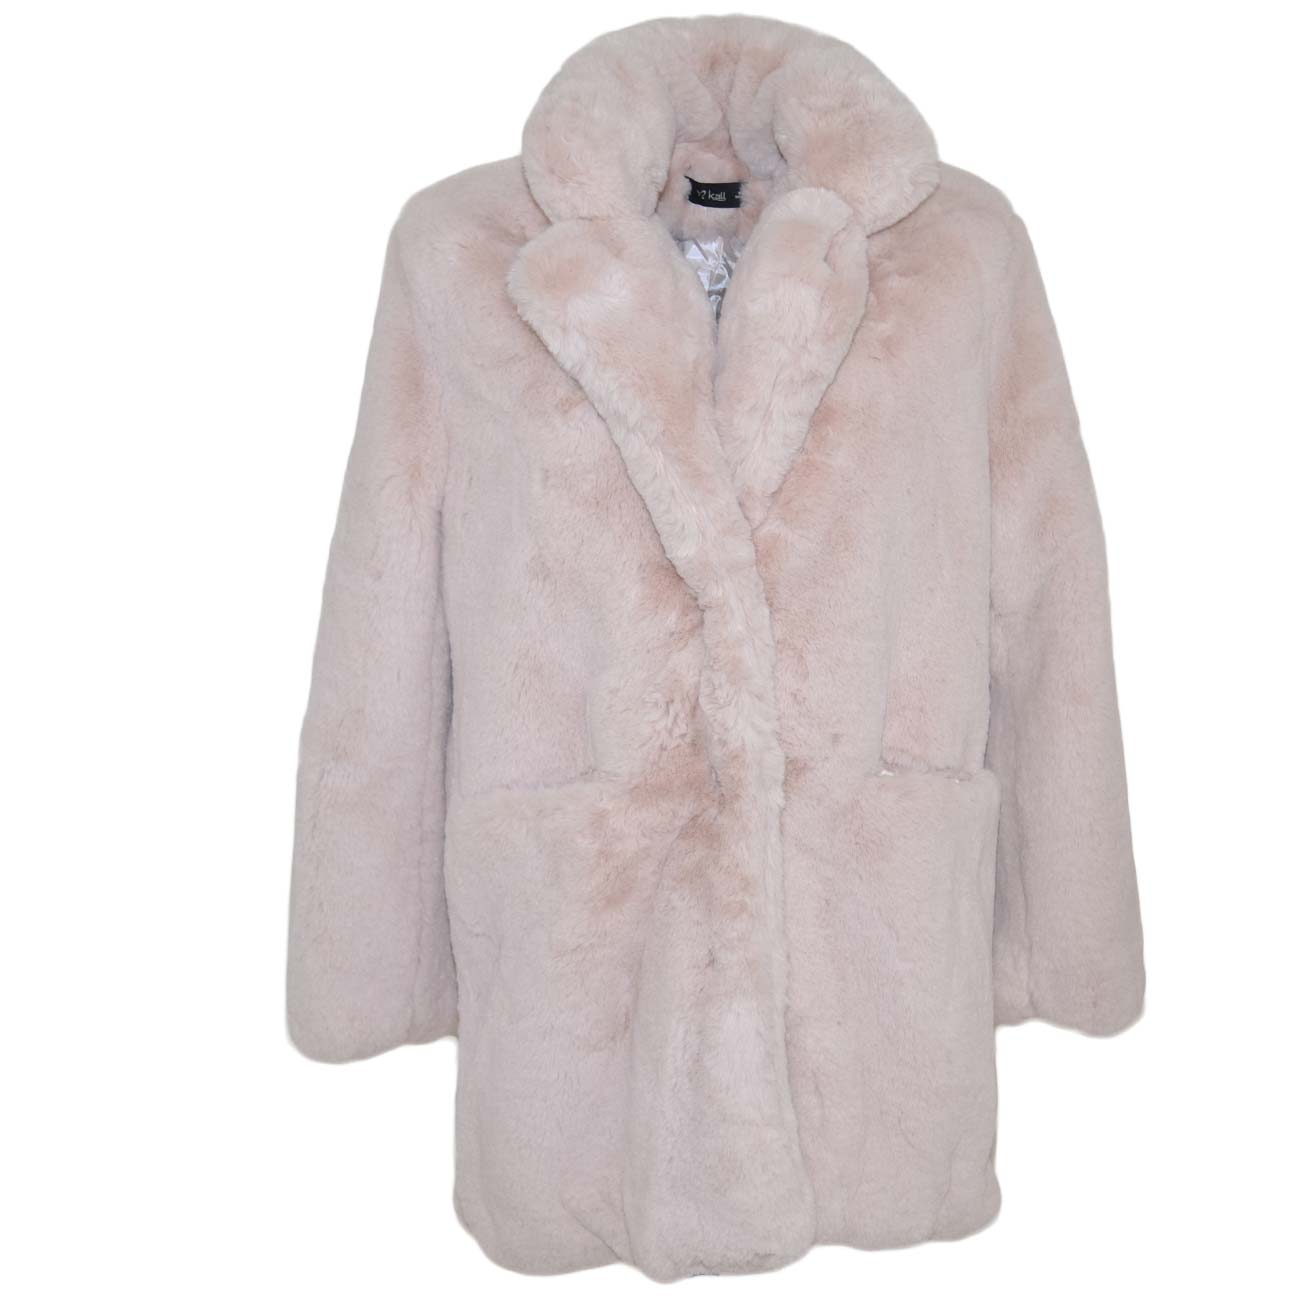 Pelliccia giacca ecologica donna rosa cipria lunga morbida a due ganci manica lunga molto calda e spesso moda gdl.